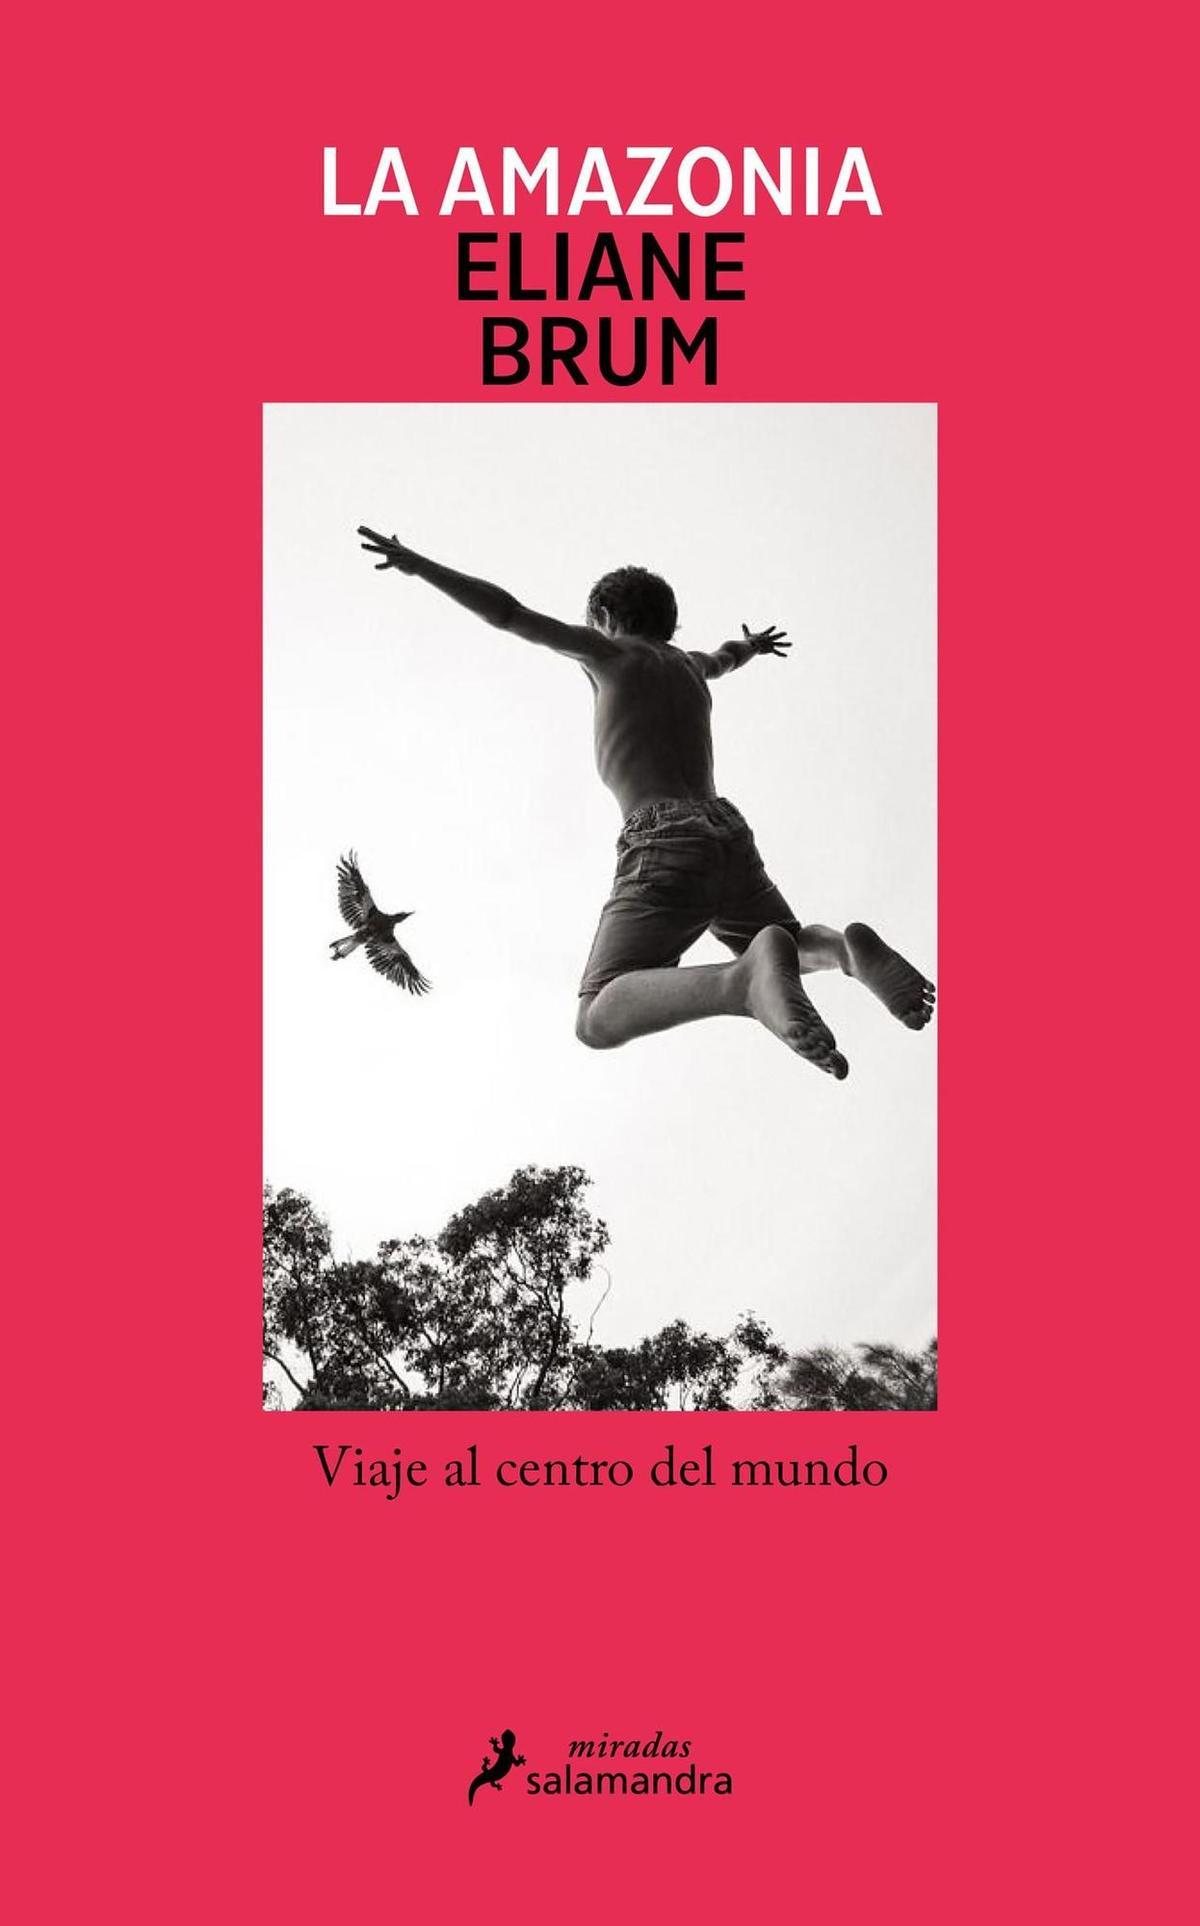 Frontal del libro 'La Amazonia', de la periodista brasileña Eliane Brum, publicado en España por Salamandra.